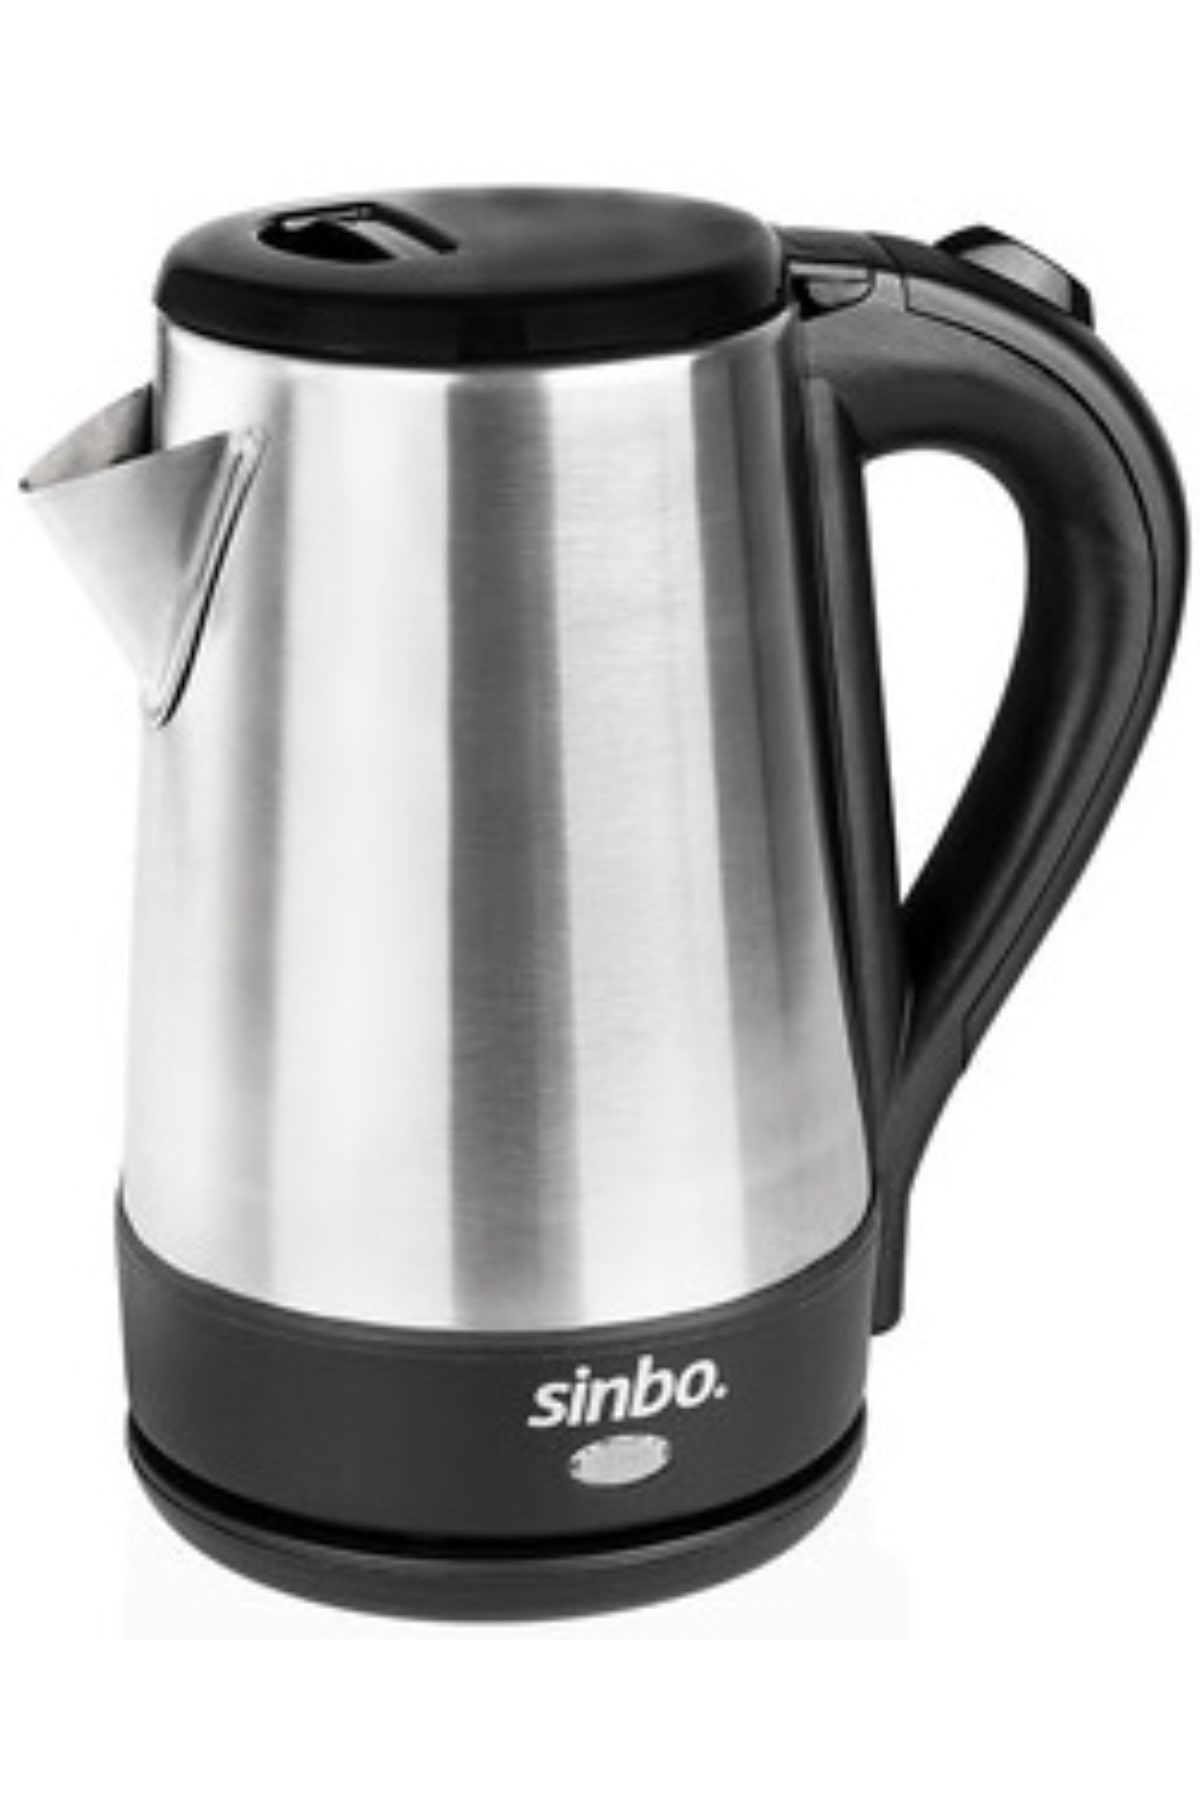 Sinbo Sk-8013 Çelik Kettle 1.5Lt*8 - 11-0154 - 2345